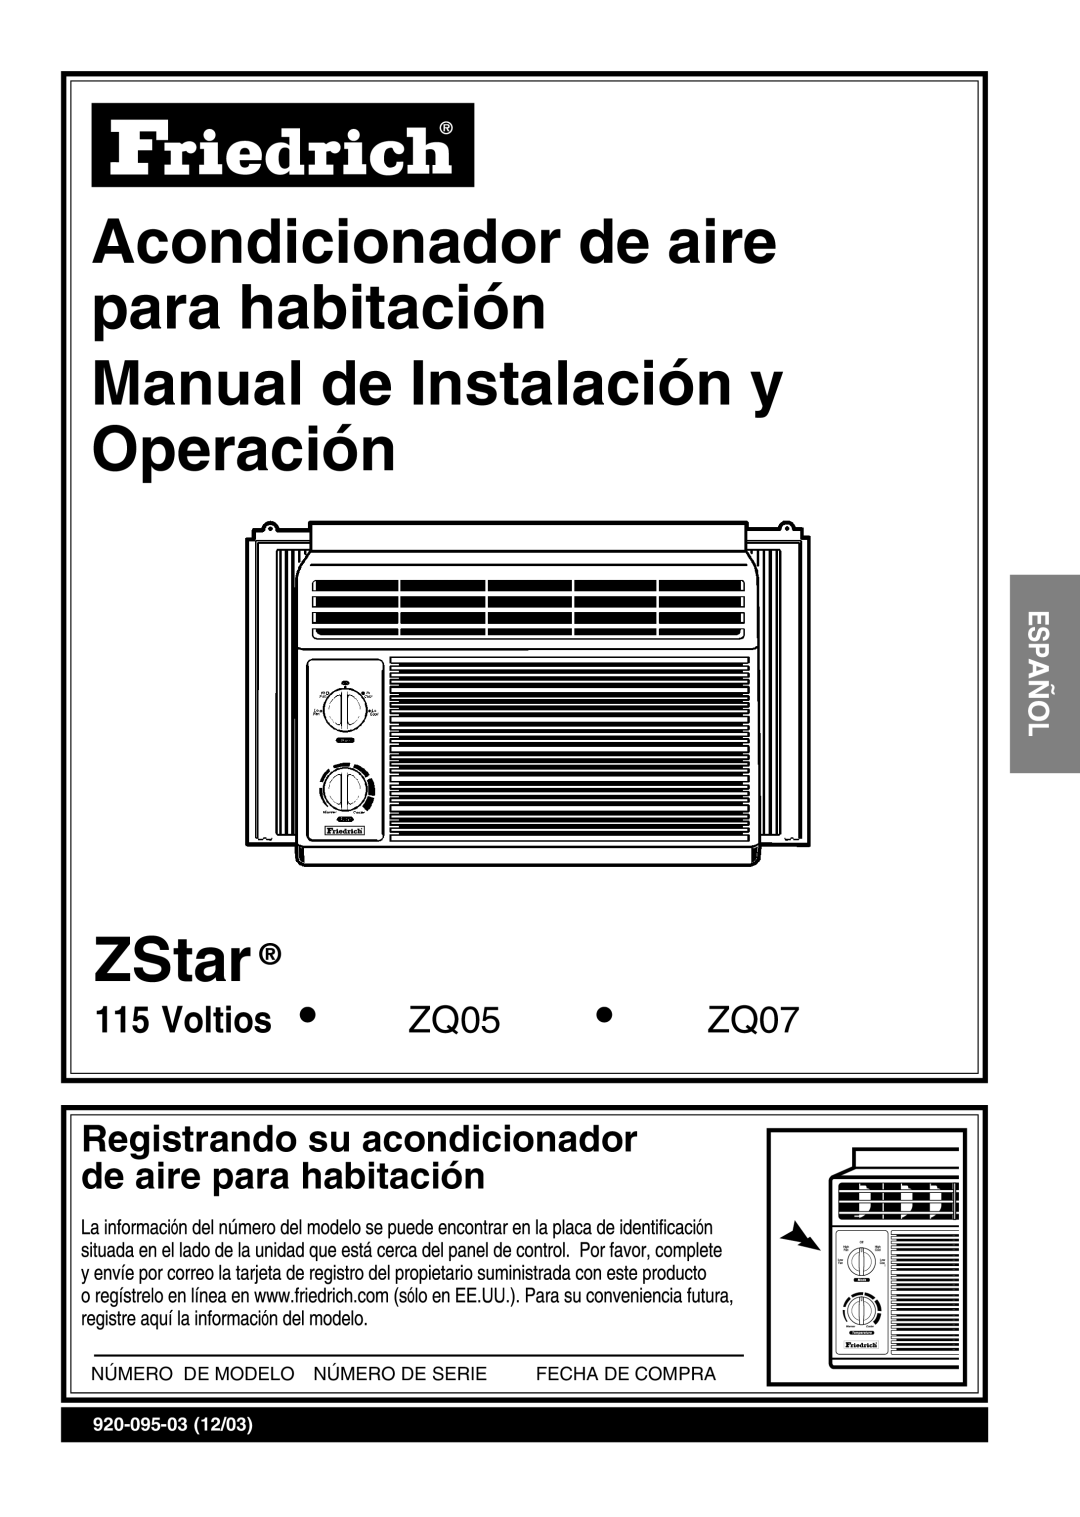 Friedrich ZStar operation manual Voltios, Registrando su acondicionador, de aire para habitación, ZQ05, ZQ07 